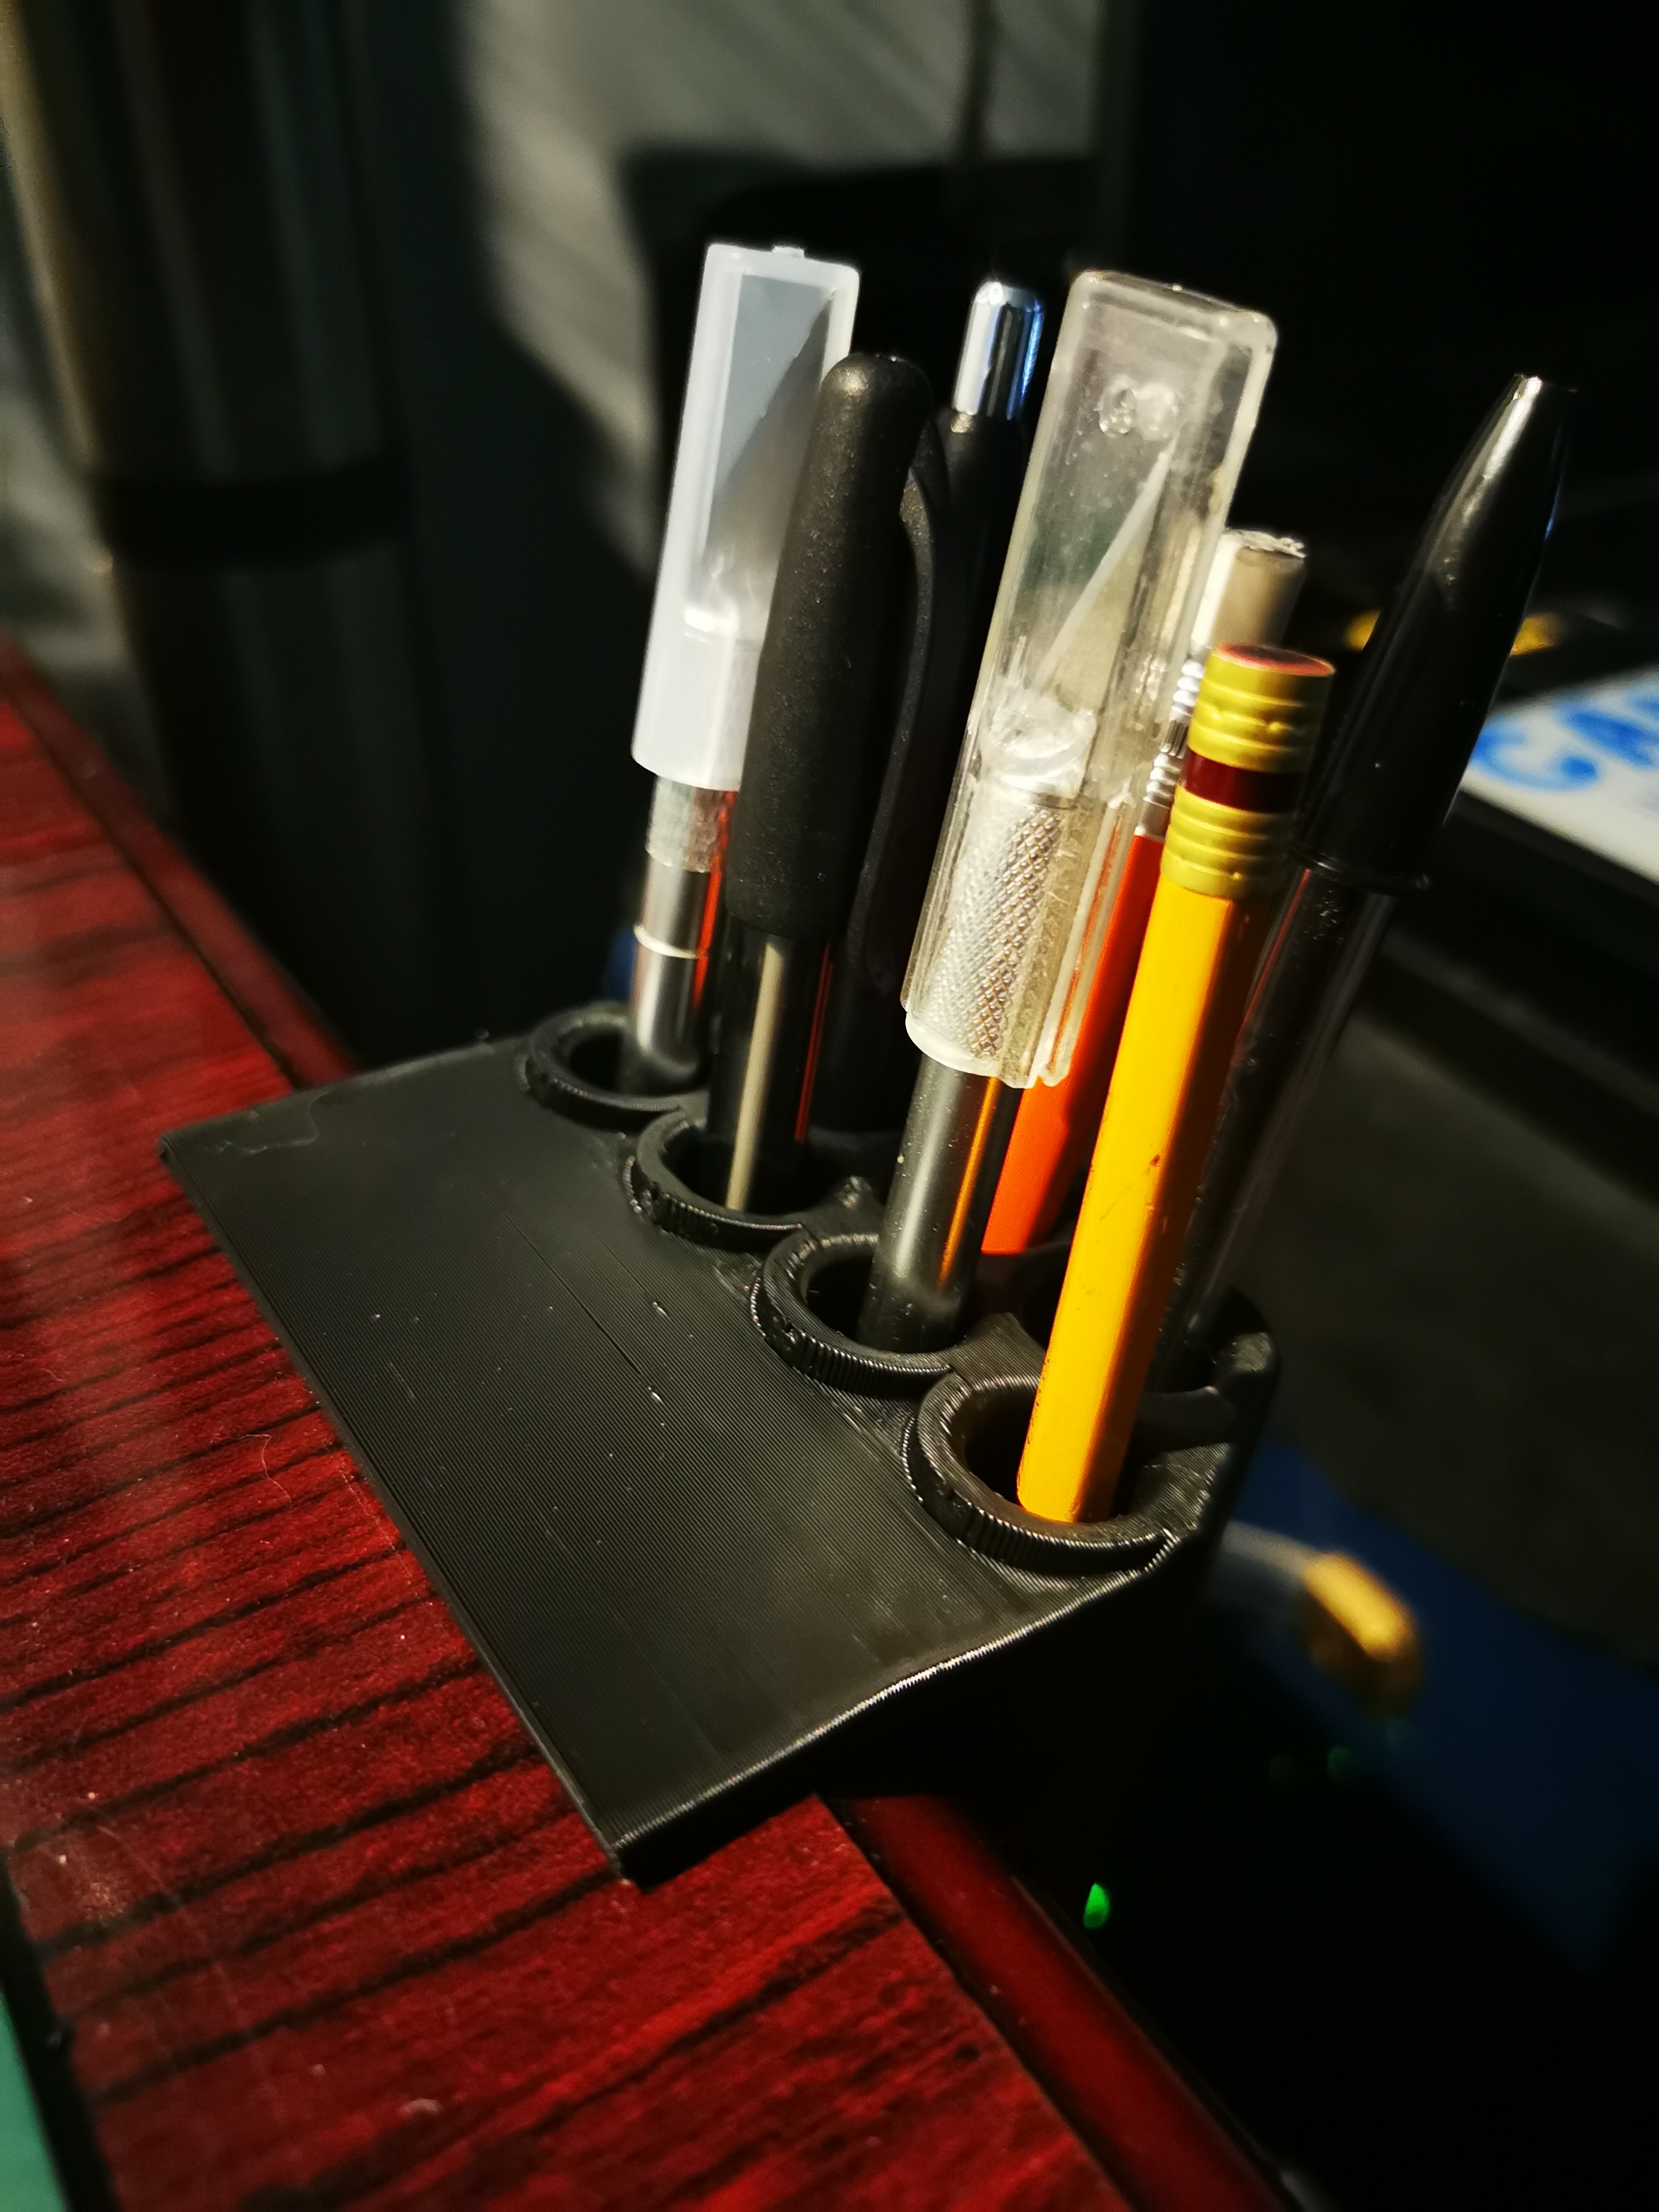 Desk Edge Pen Holder Clips to surface